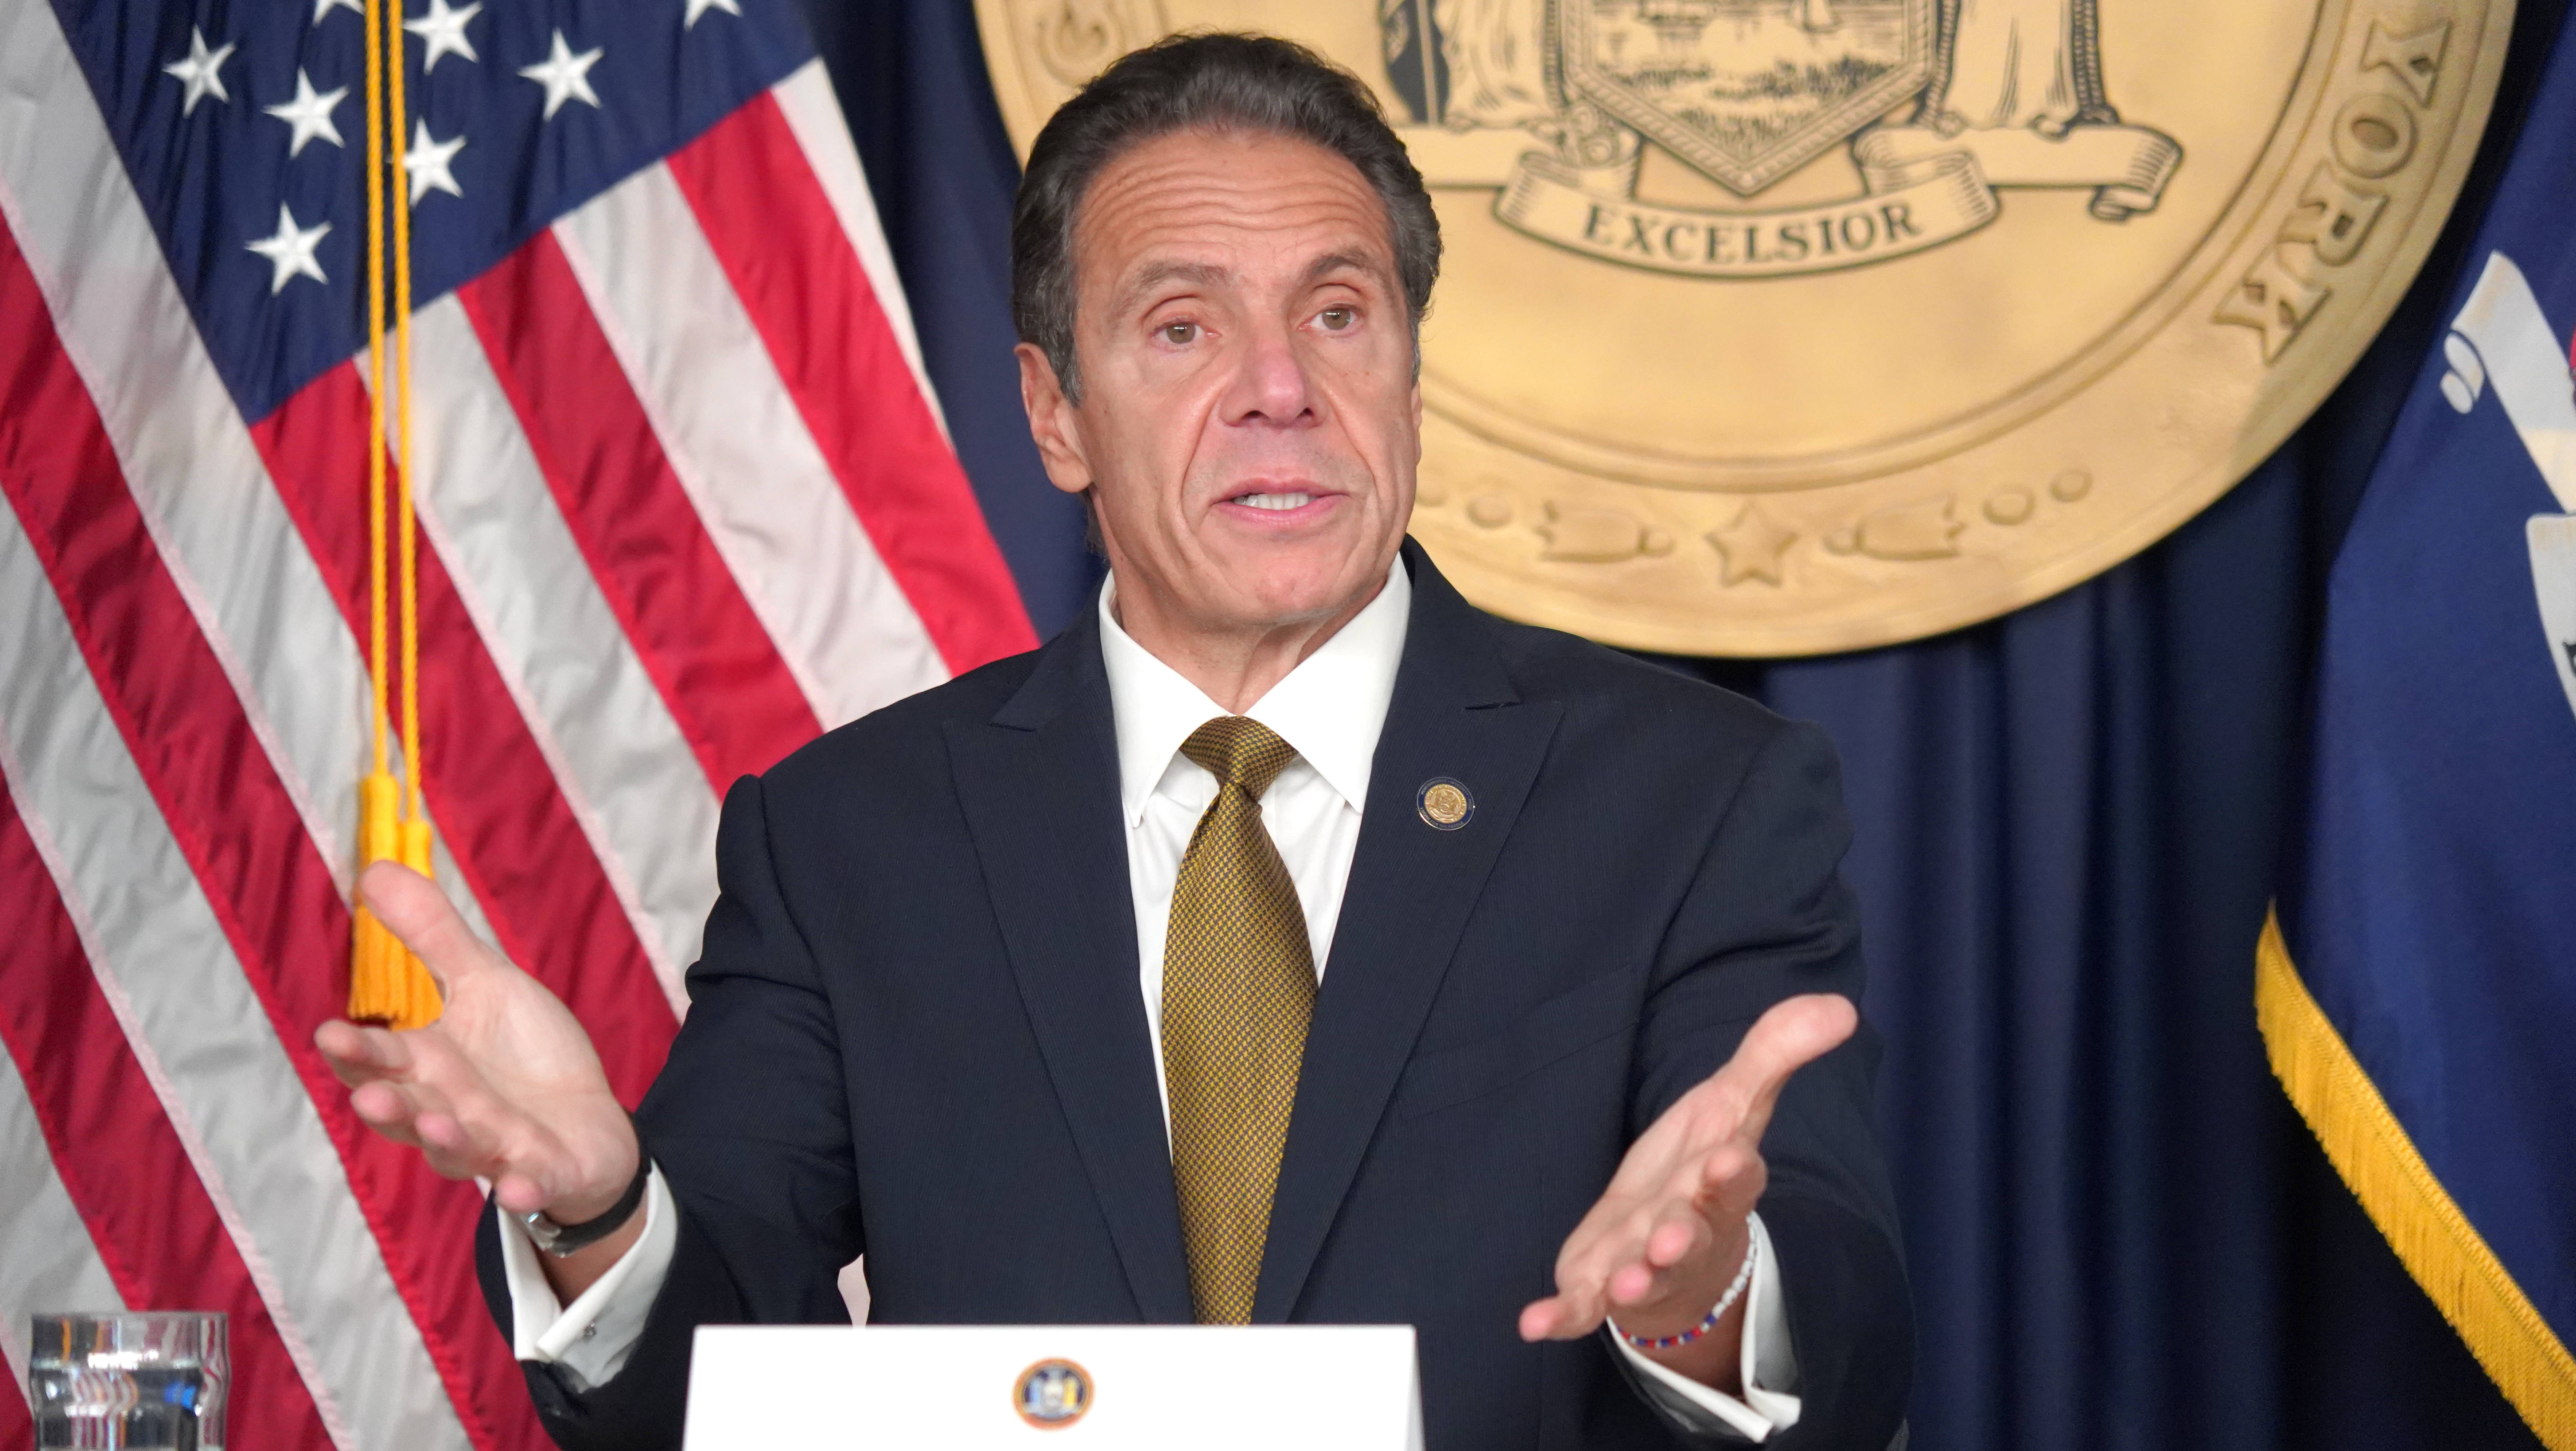 Andrew Cuomo dimite como gobernador de Nueva York tras las acusaciones de acoso